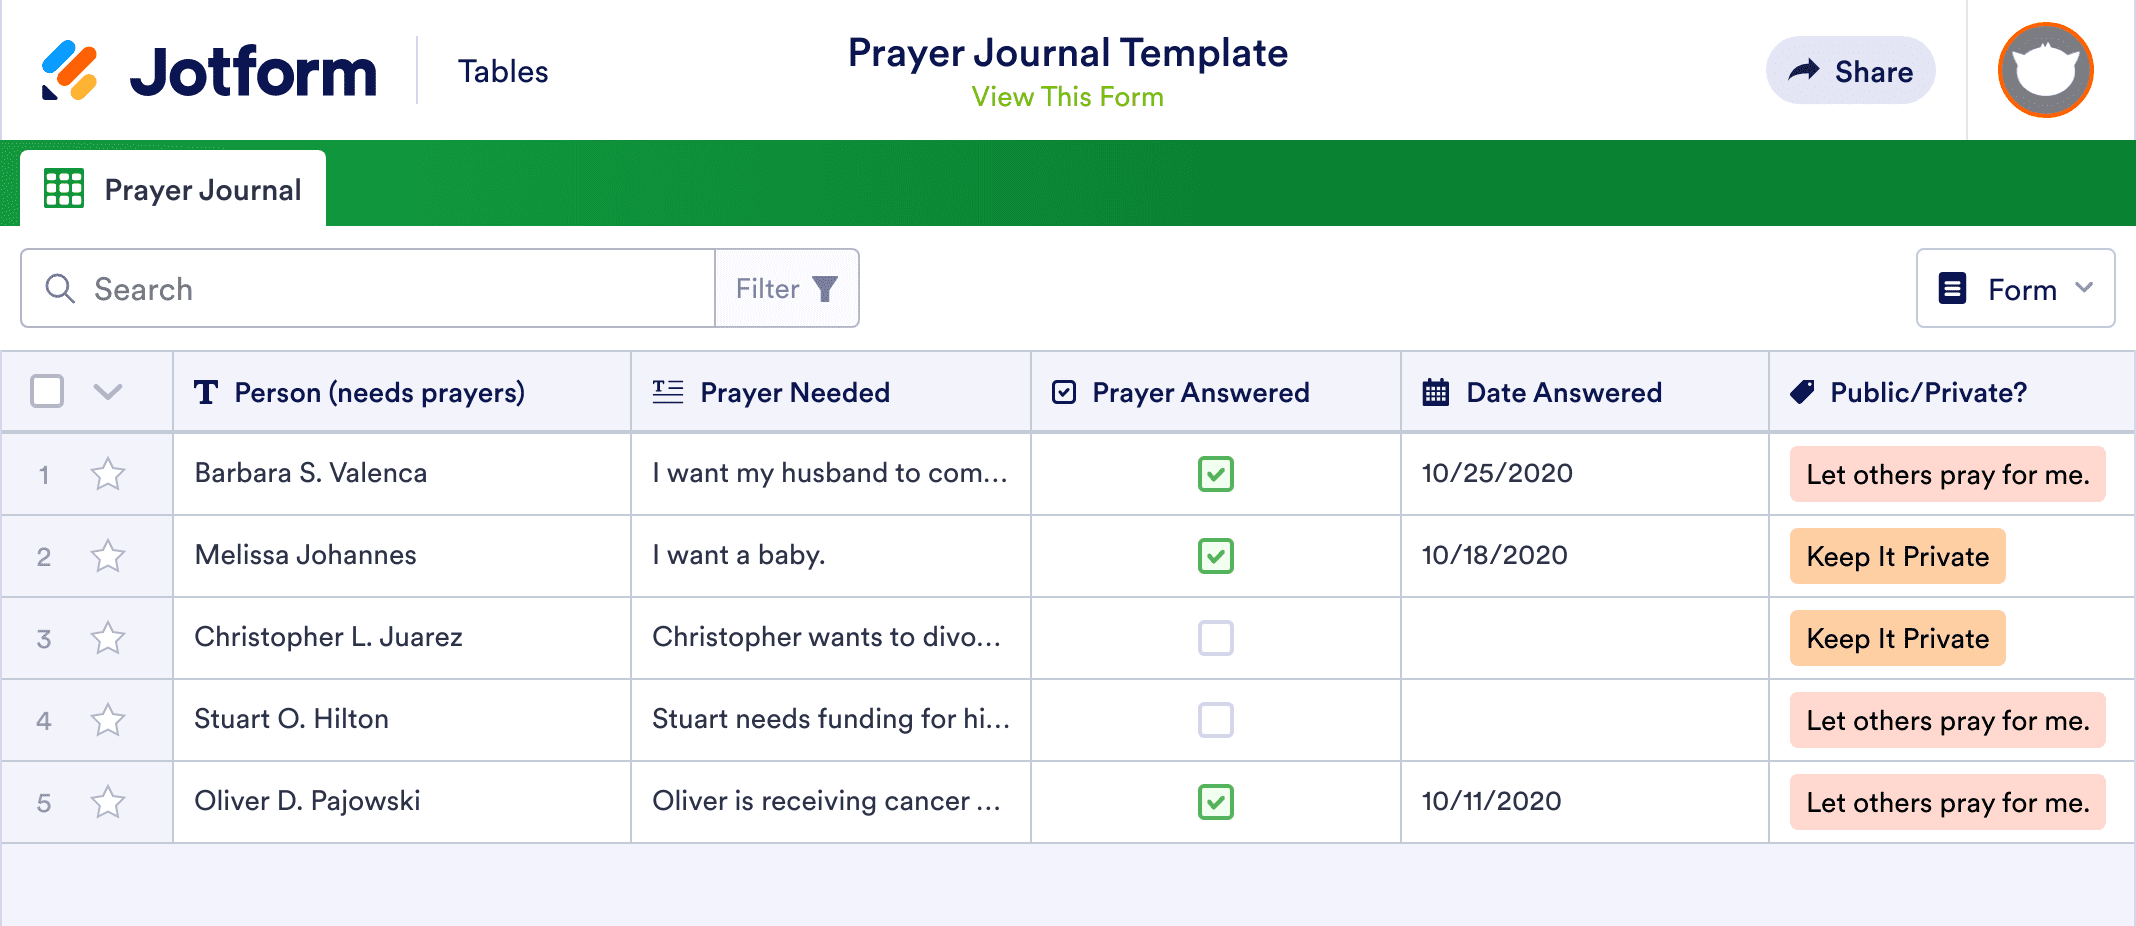 Prayer Journal Template